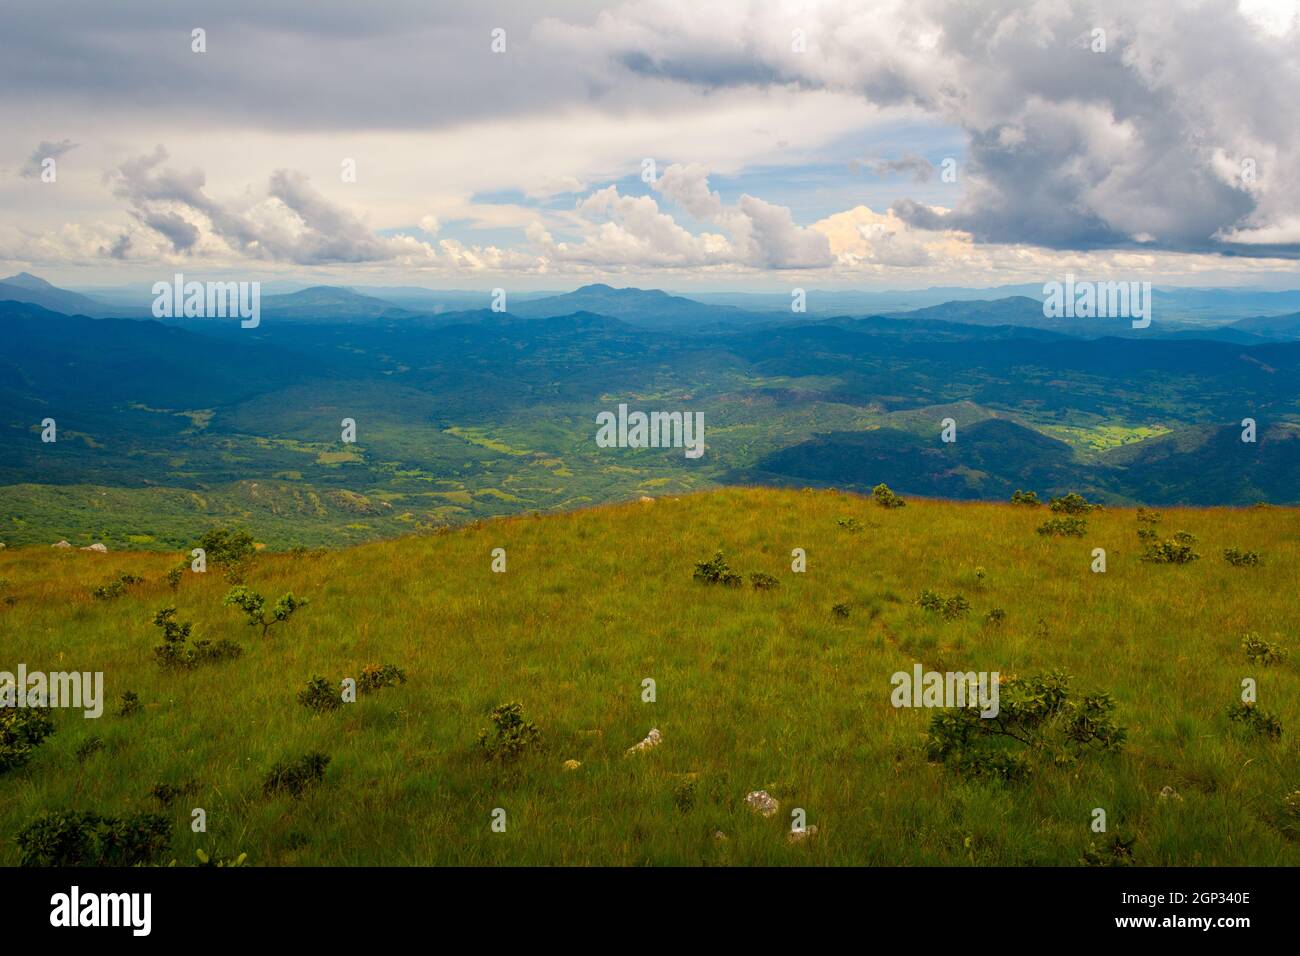 Panorama des collines verdoyantes du parc national de Nyika, au Malawi, en Afrique, par une journée nuageux Banque D'Images